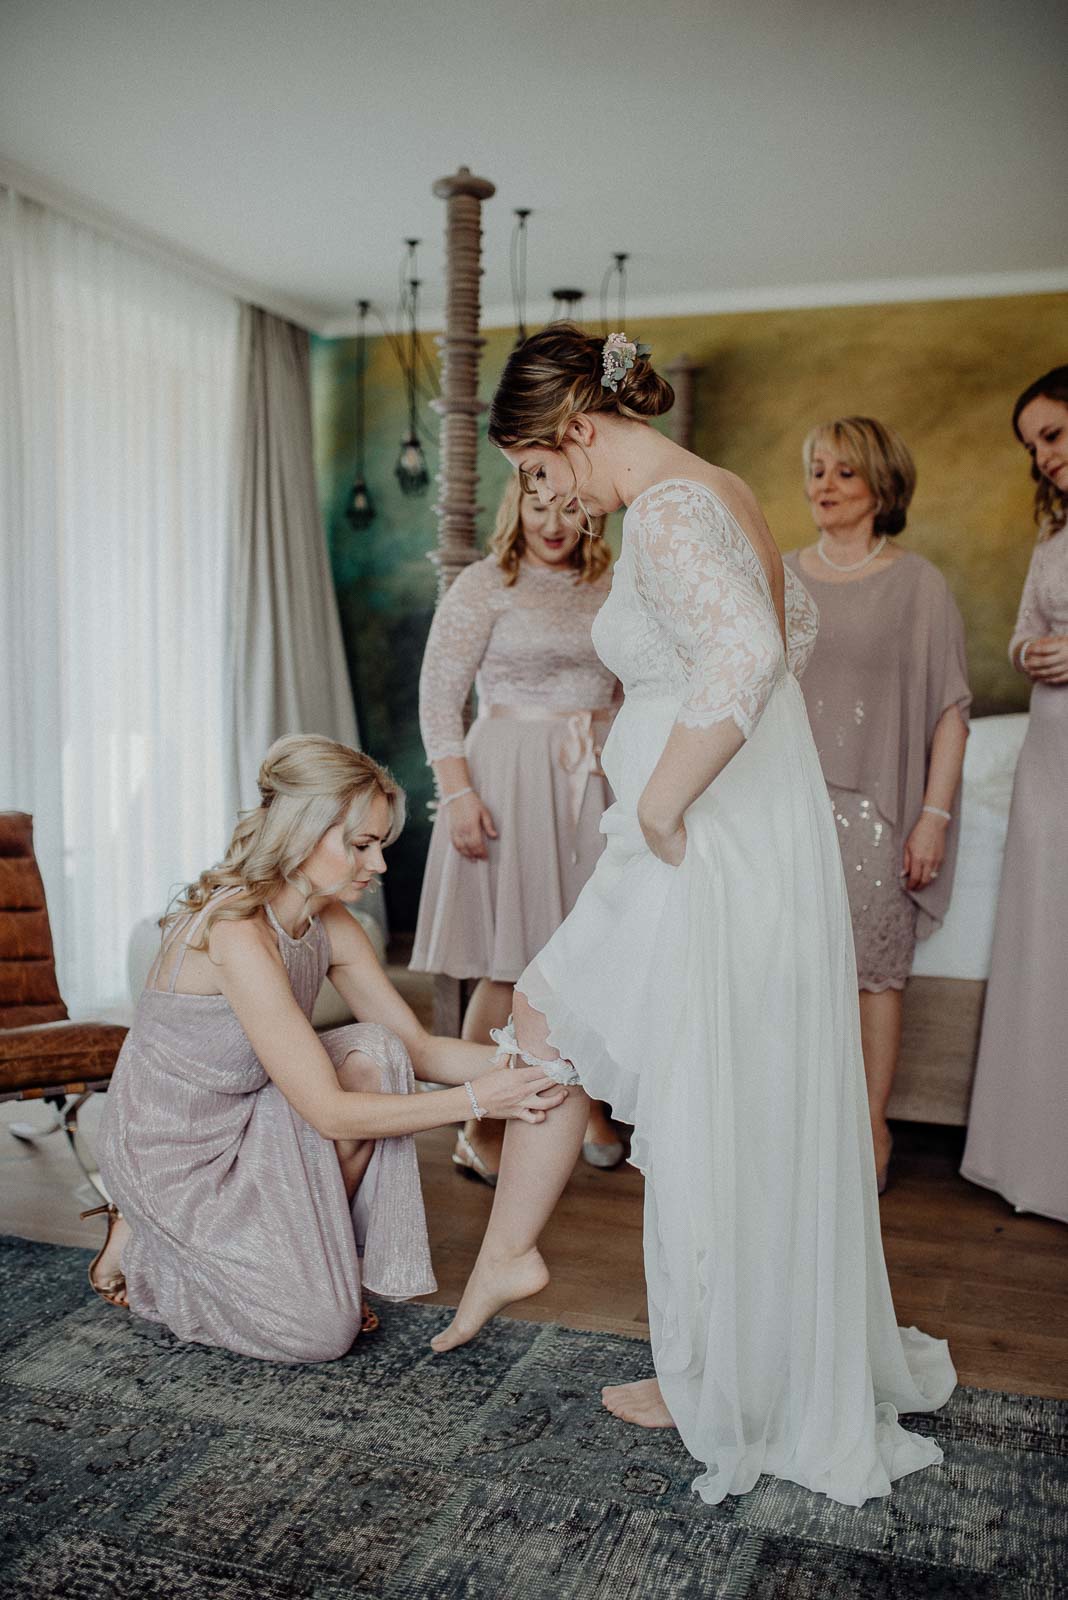 Die Braut erhält Hilfe beim Anziehen Ihres Strumpfbandes